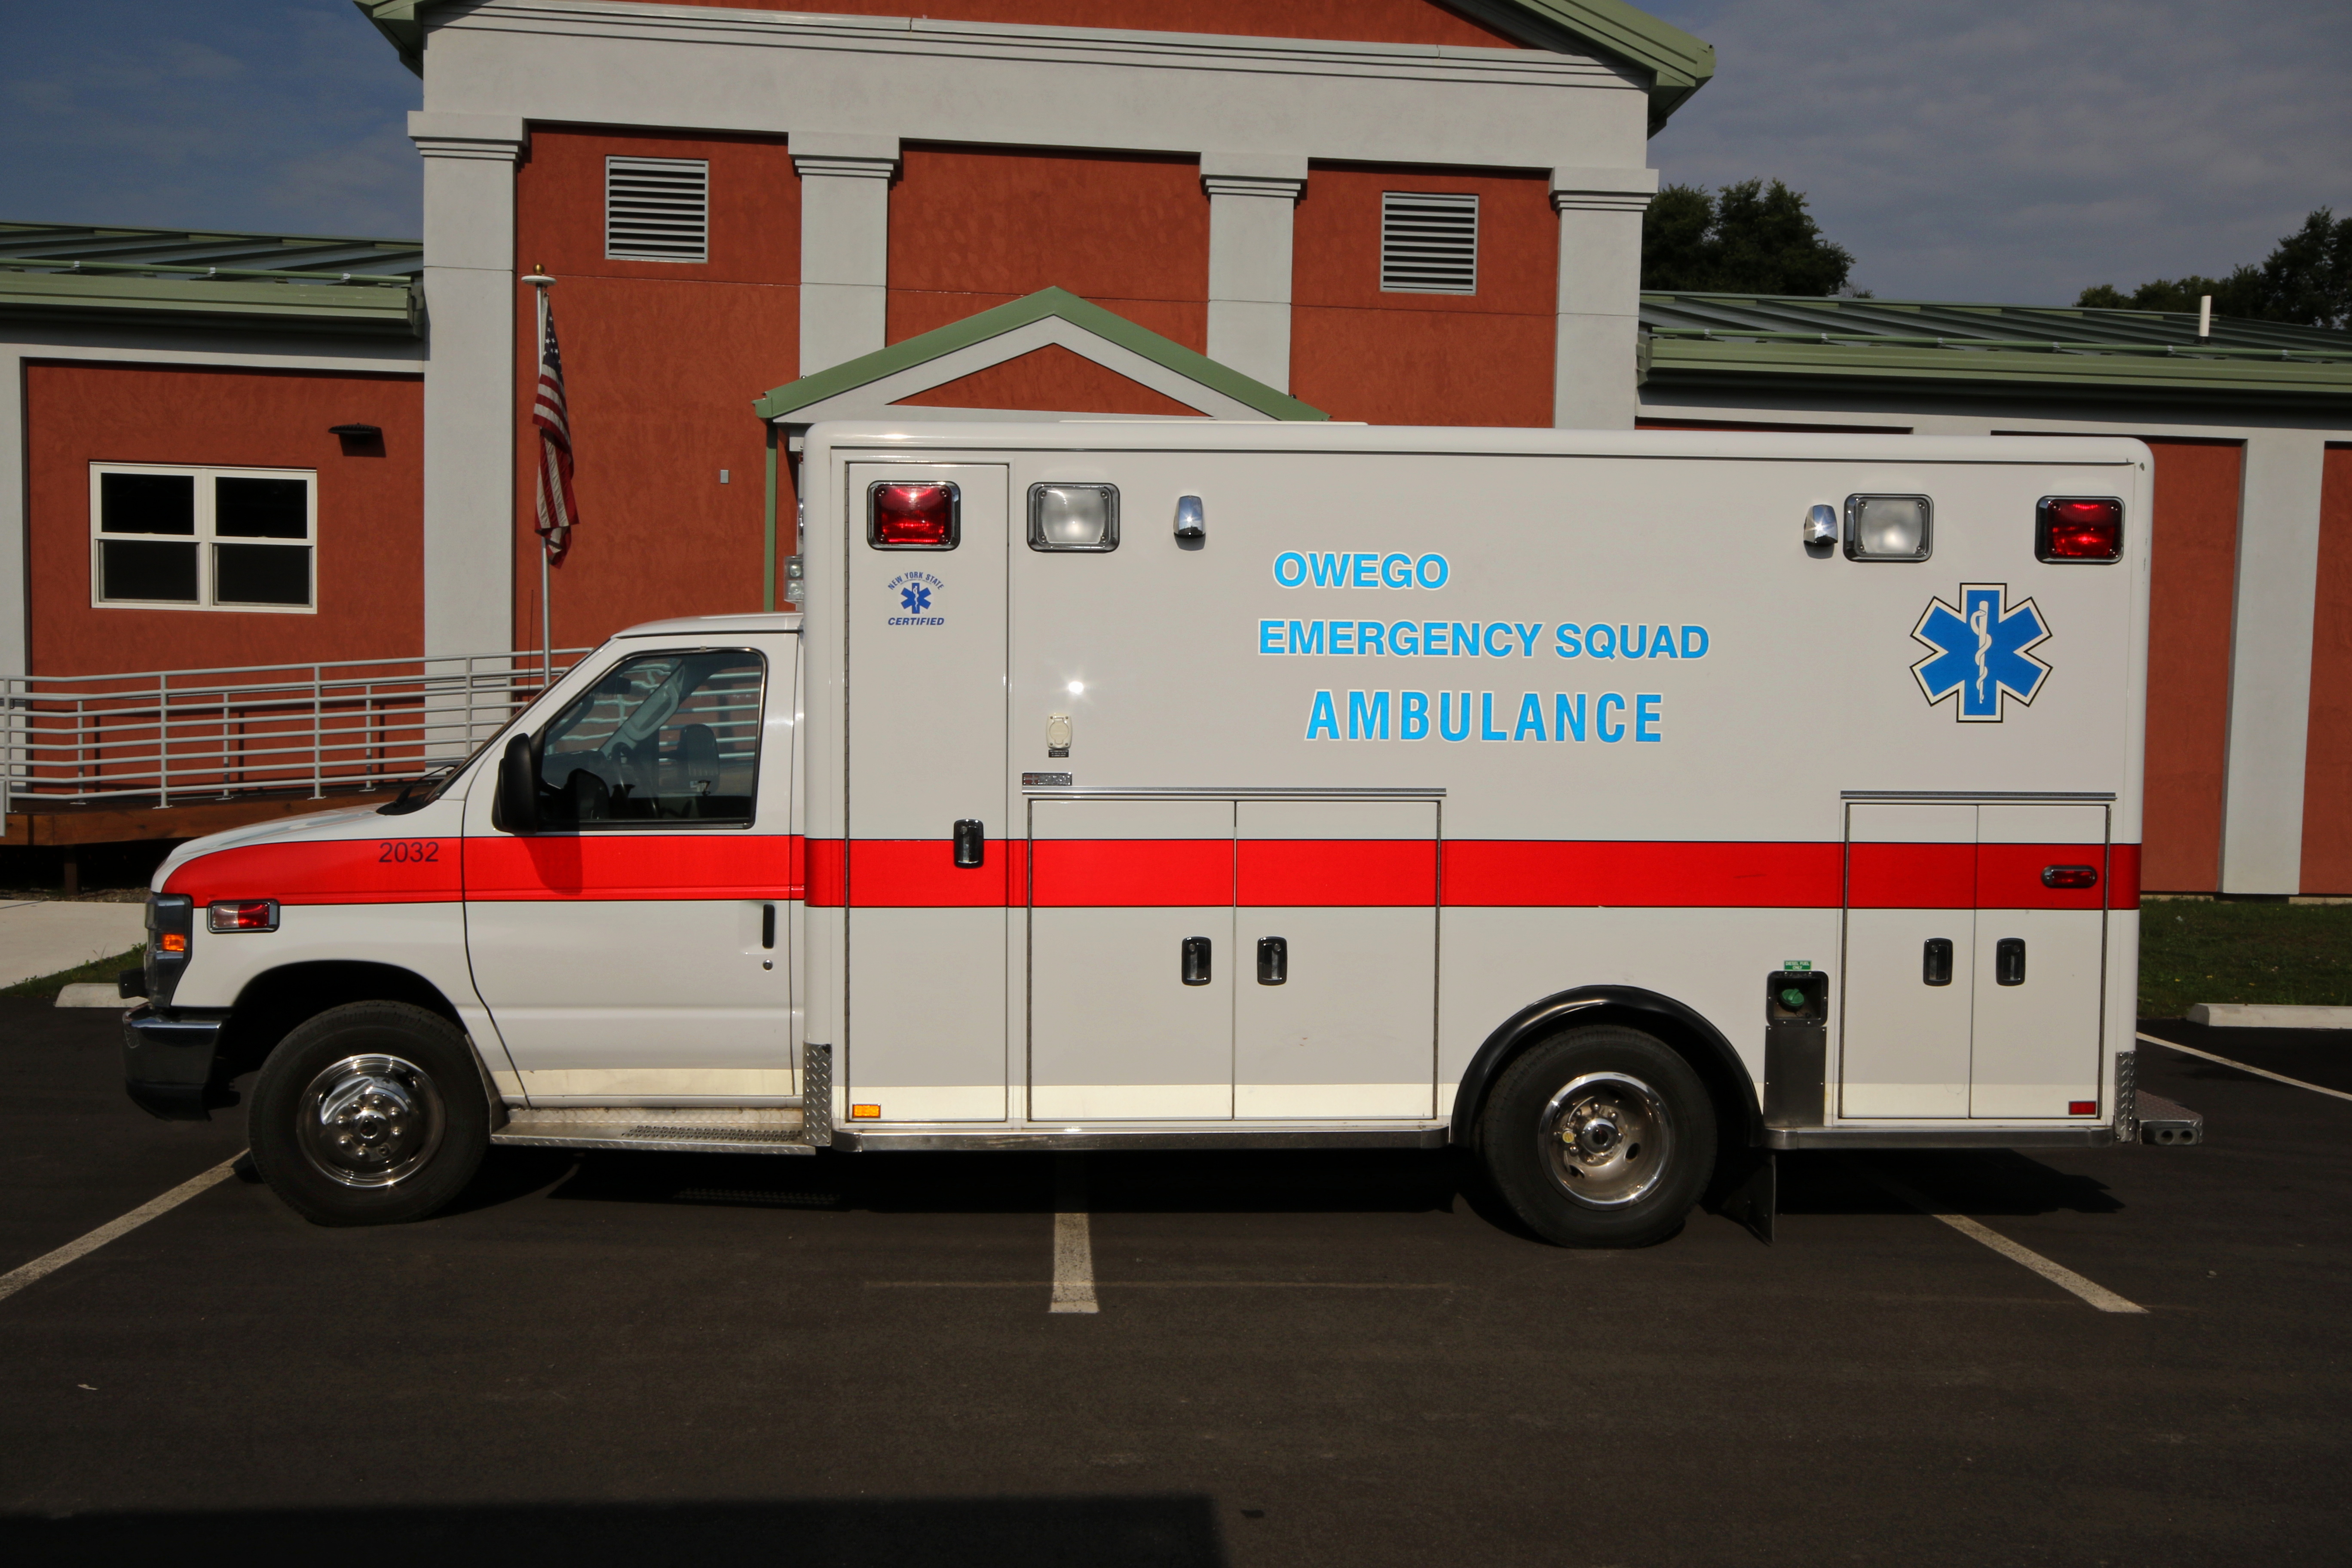 Squad's 2032 ambulance